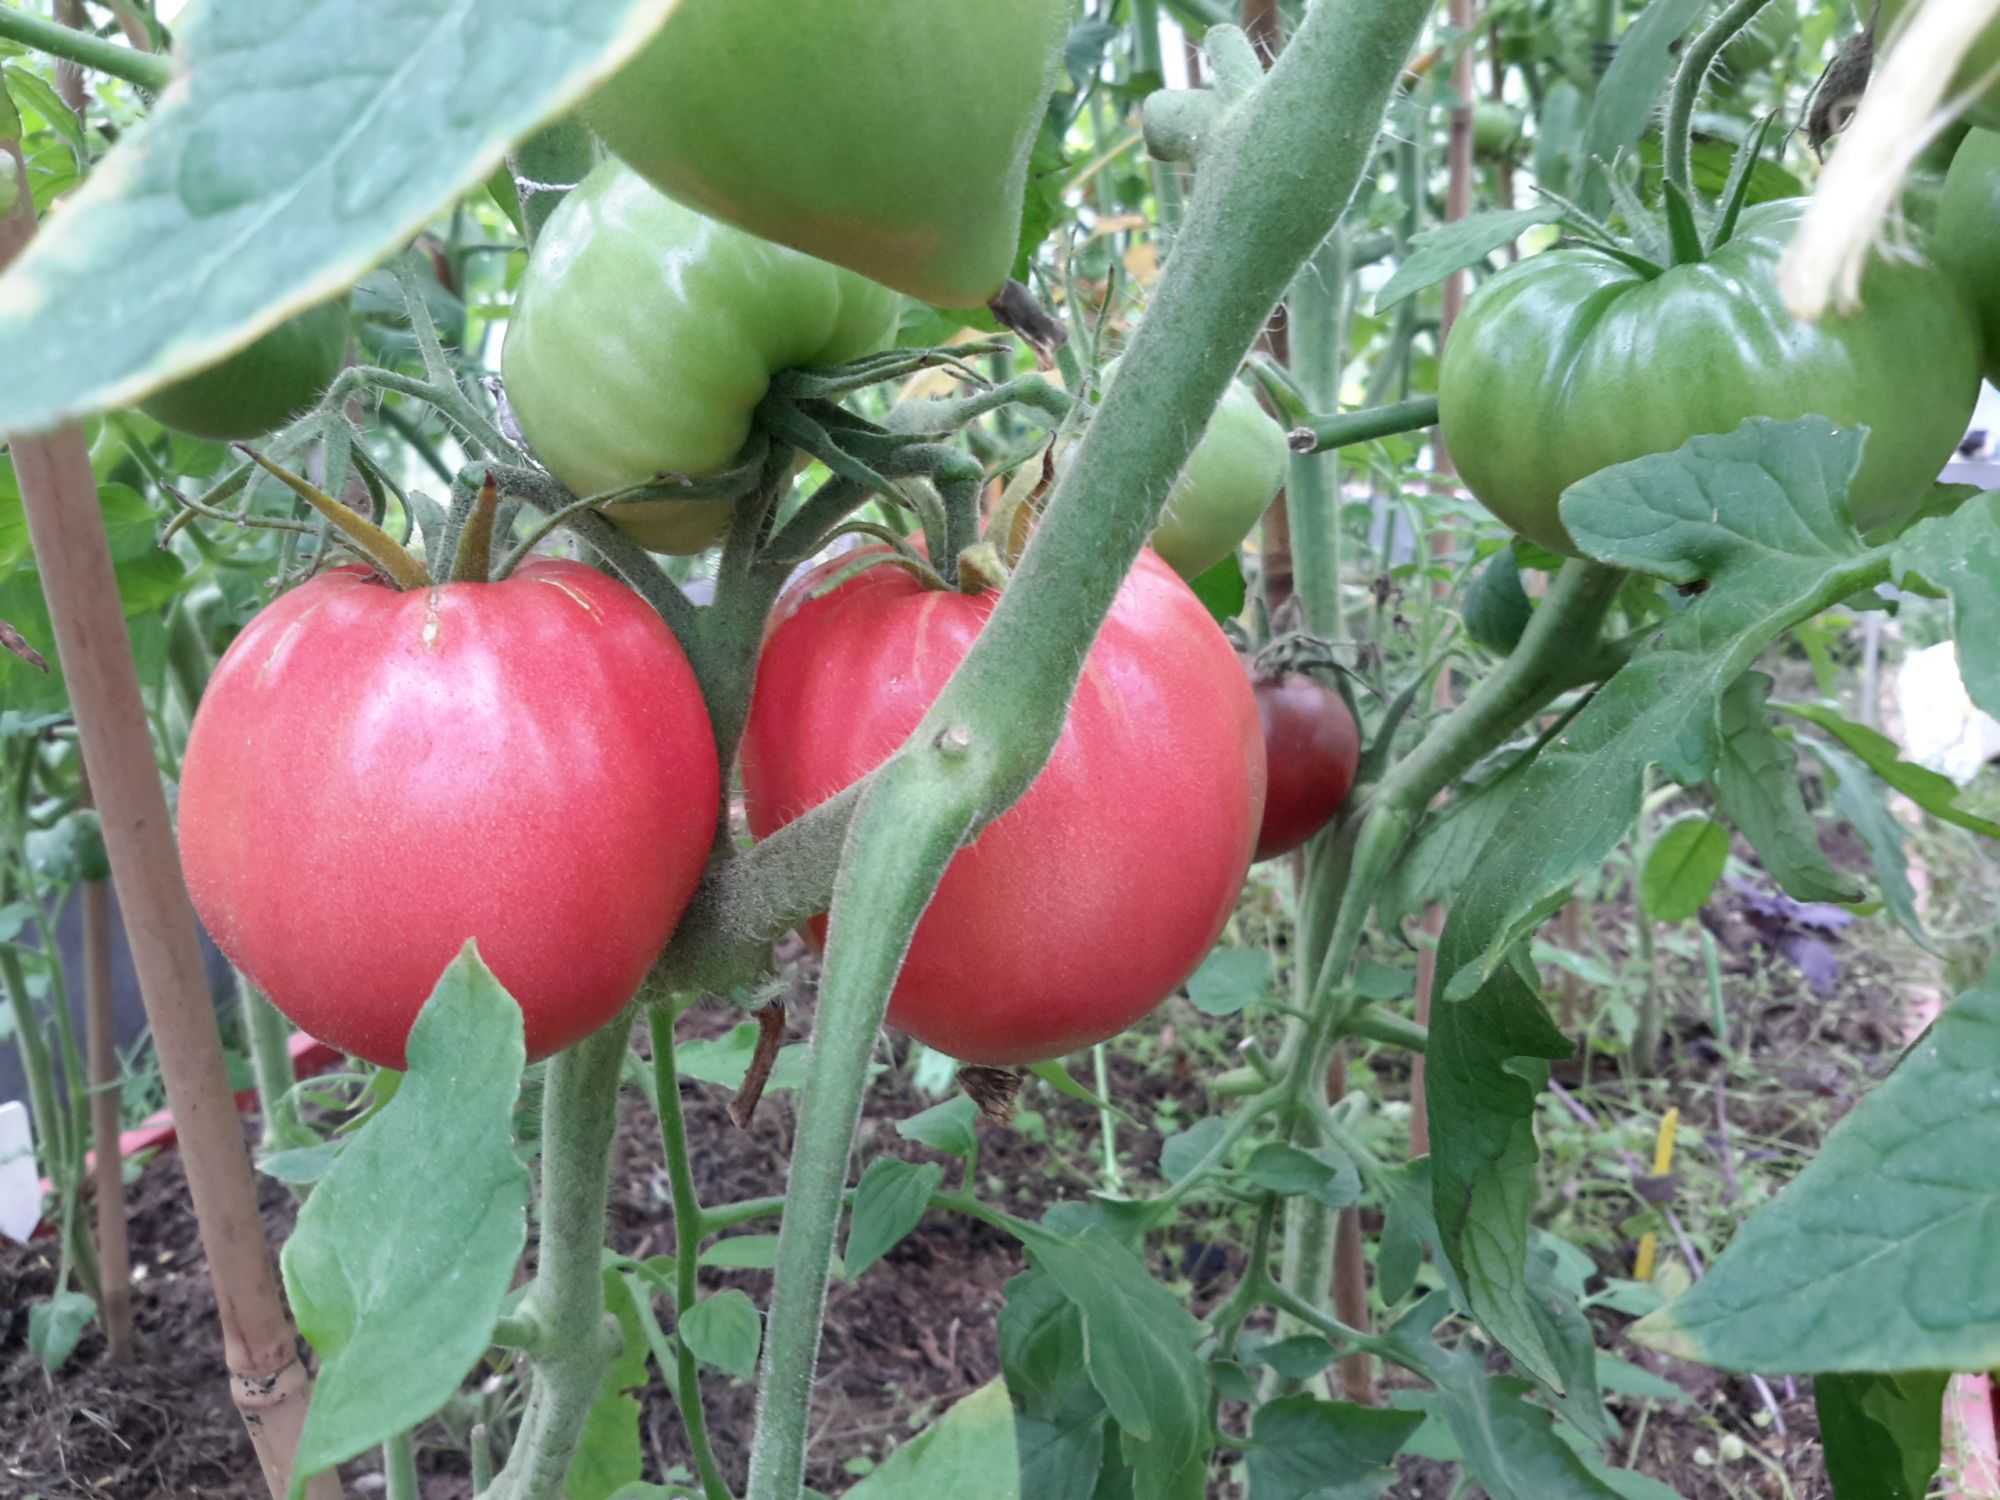 Абаканский розовый томат описание фото